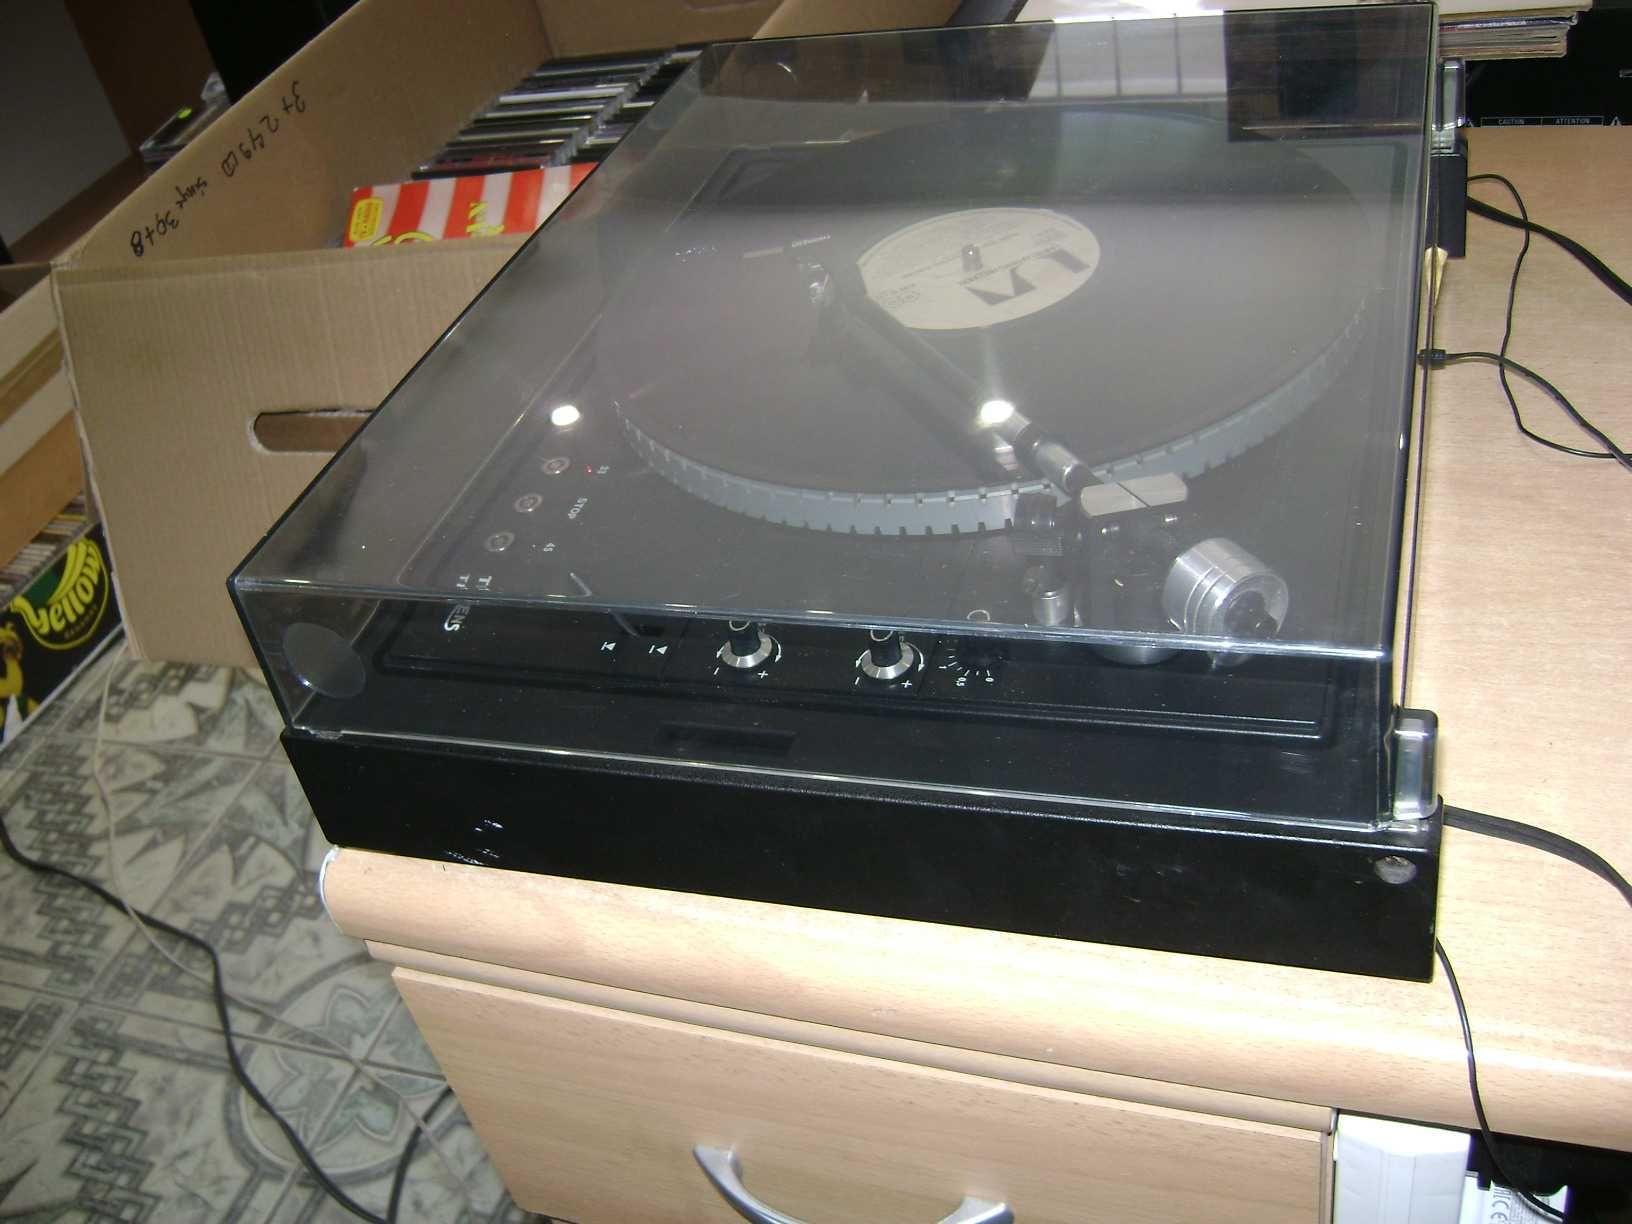 gramofon THORENS TD-105 paskowy